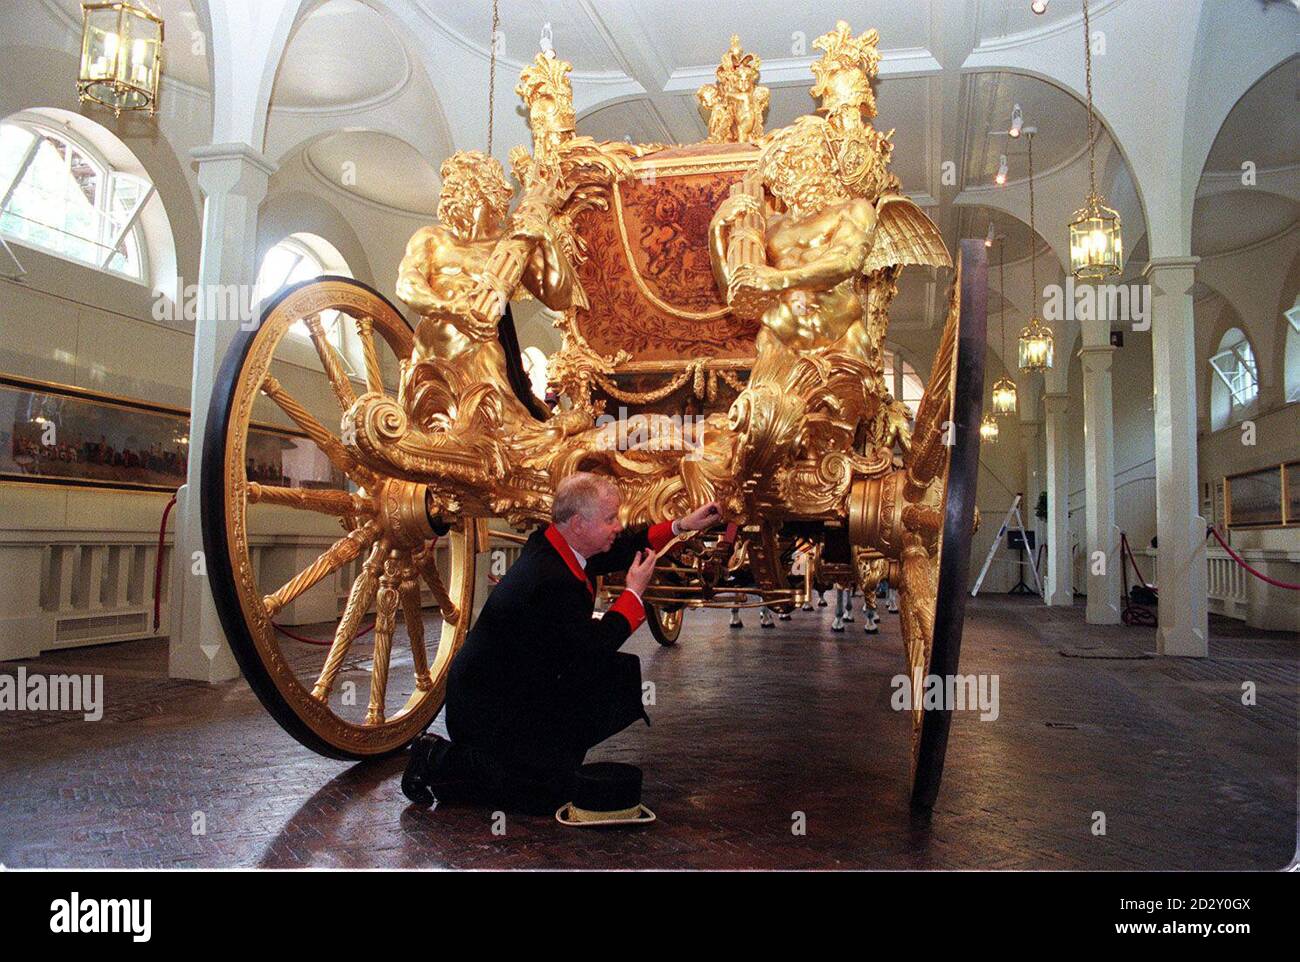 Der Gold State Coach, der seit Wilhelm IV. 1831 bei jeder Krönung verwendet wird, steht im Kutschenhaus der Königlichen Mews, wo er umgezogen wurde, um ihn vor den Elementen zu schützen. Der Leiter der Royal Collection, George Martin, wird im Royal Mews am Buckingham Palace als Hüter des königlichen Busses dargestellt. Stockfoto